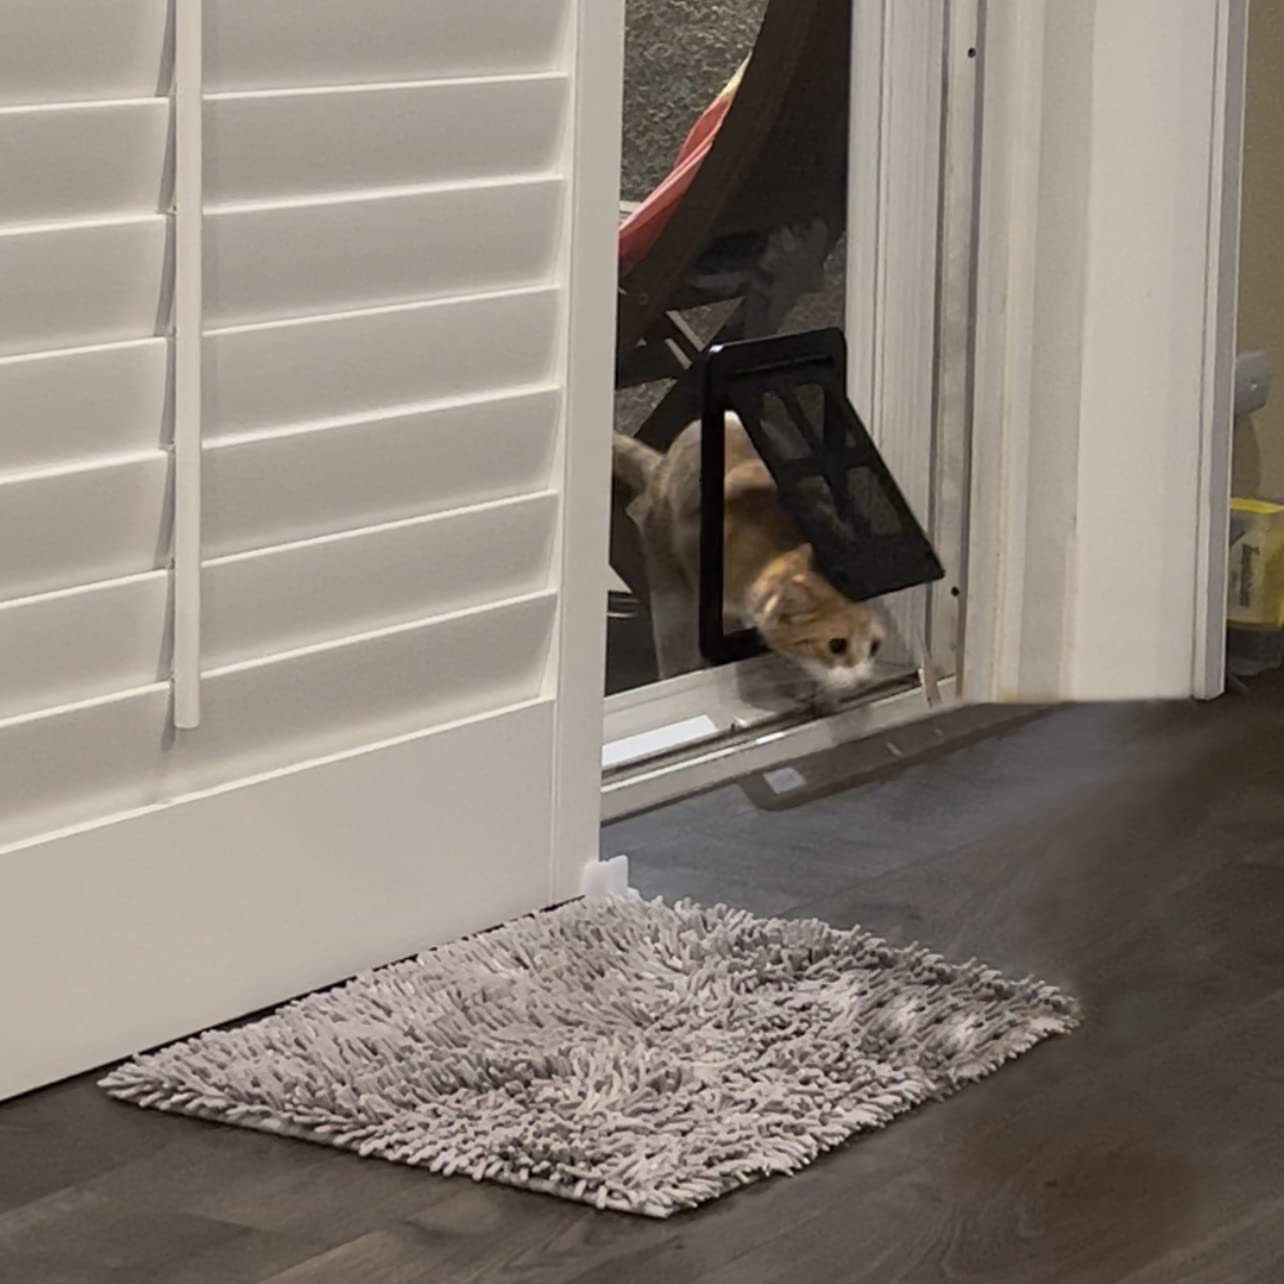 چهار قفل کشویی به شما کمک می‌کند درب سگ/گربه را ایمن‌تر قفل کنید، مطمئن شوید که حیوان خانگی شما وقتی در خانه نیستید سرگردان نمی‌شود یا گم نمی‌شود، بنابراین می‌توانید با خیال راحت بیرون بروید.